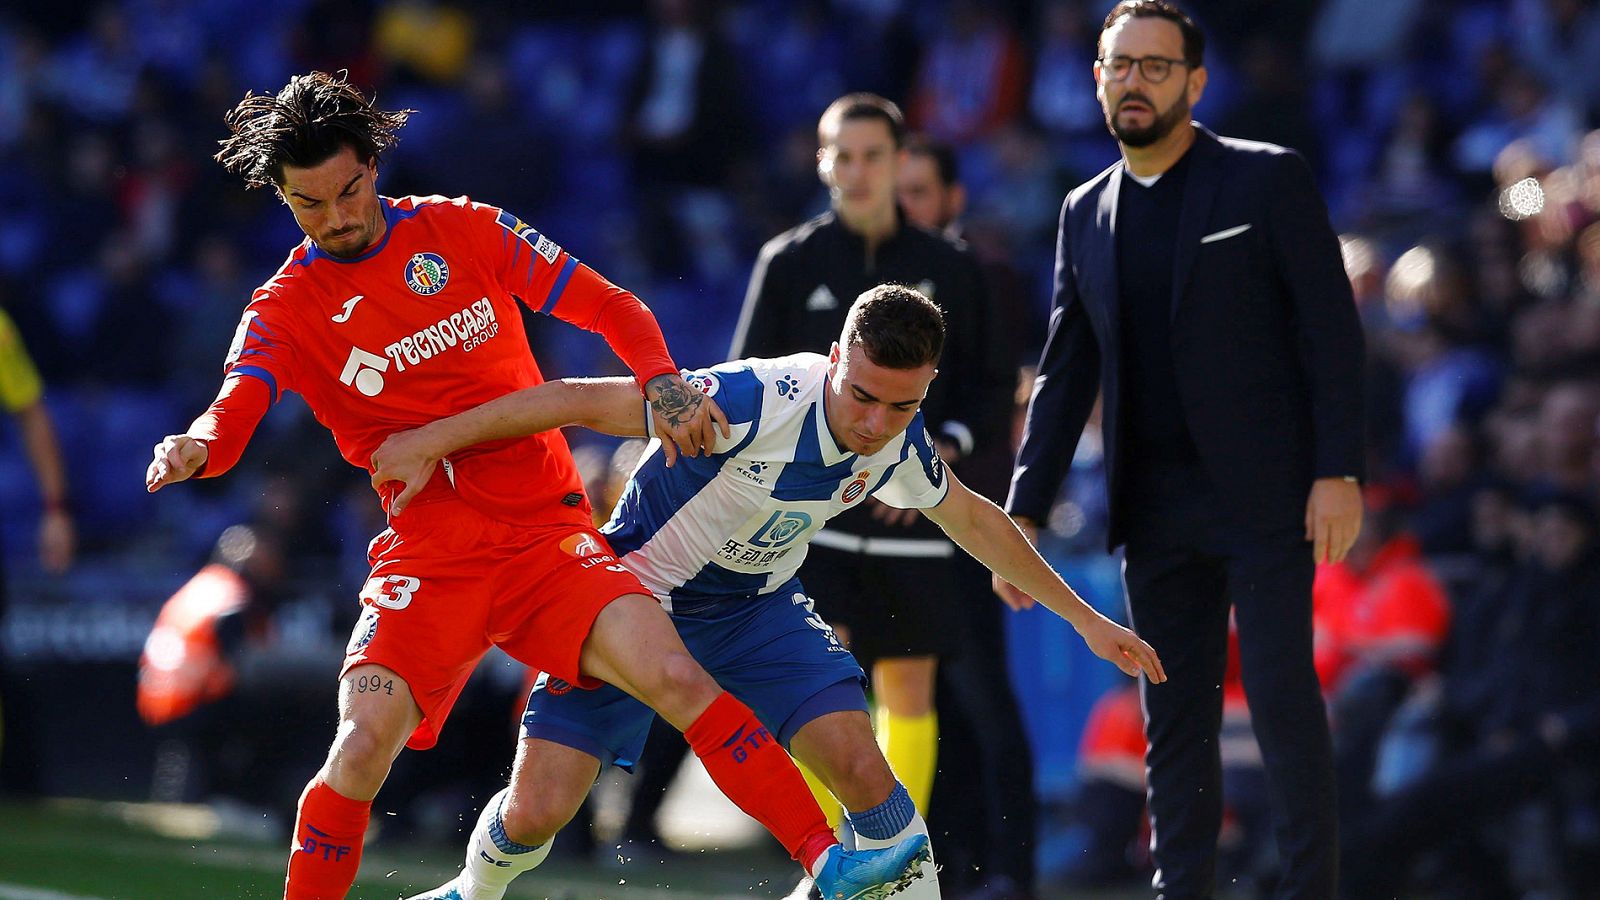 El defensa del Espanyol Adriá Giner Pedrosa, y el centrocampista del Getafe David Remesegueiro, durante el partido.